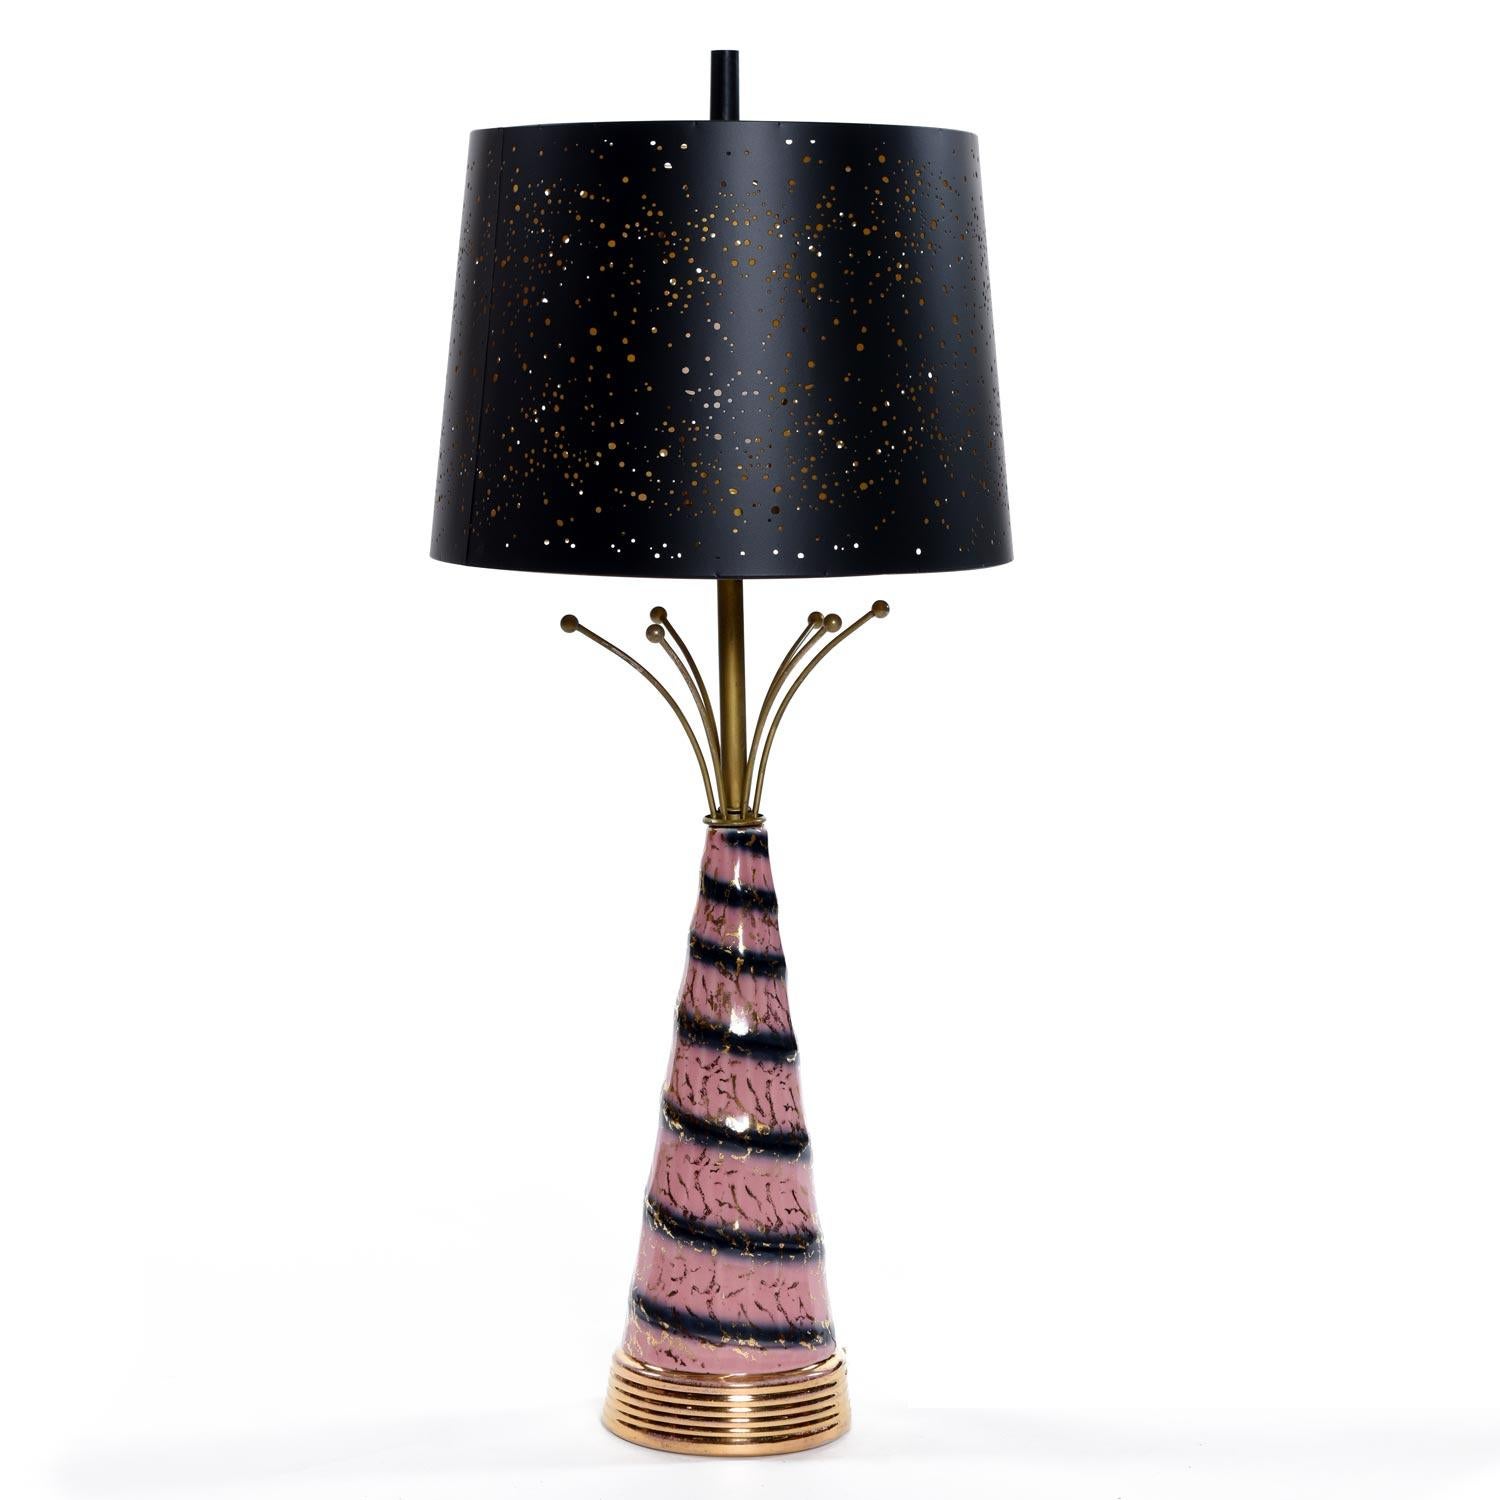 Hollywood Regency Pink Gold and Black Sputnik Starburst Ceramic Mid-Century Modern Table Lamps